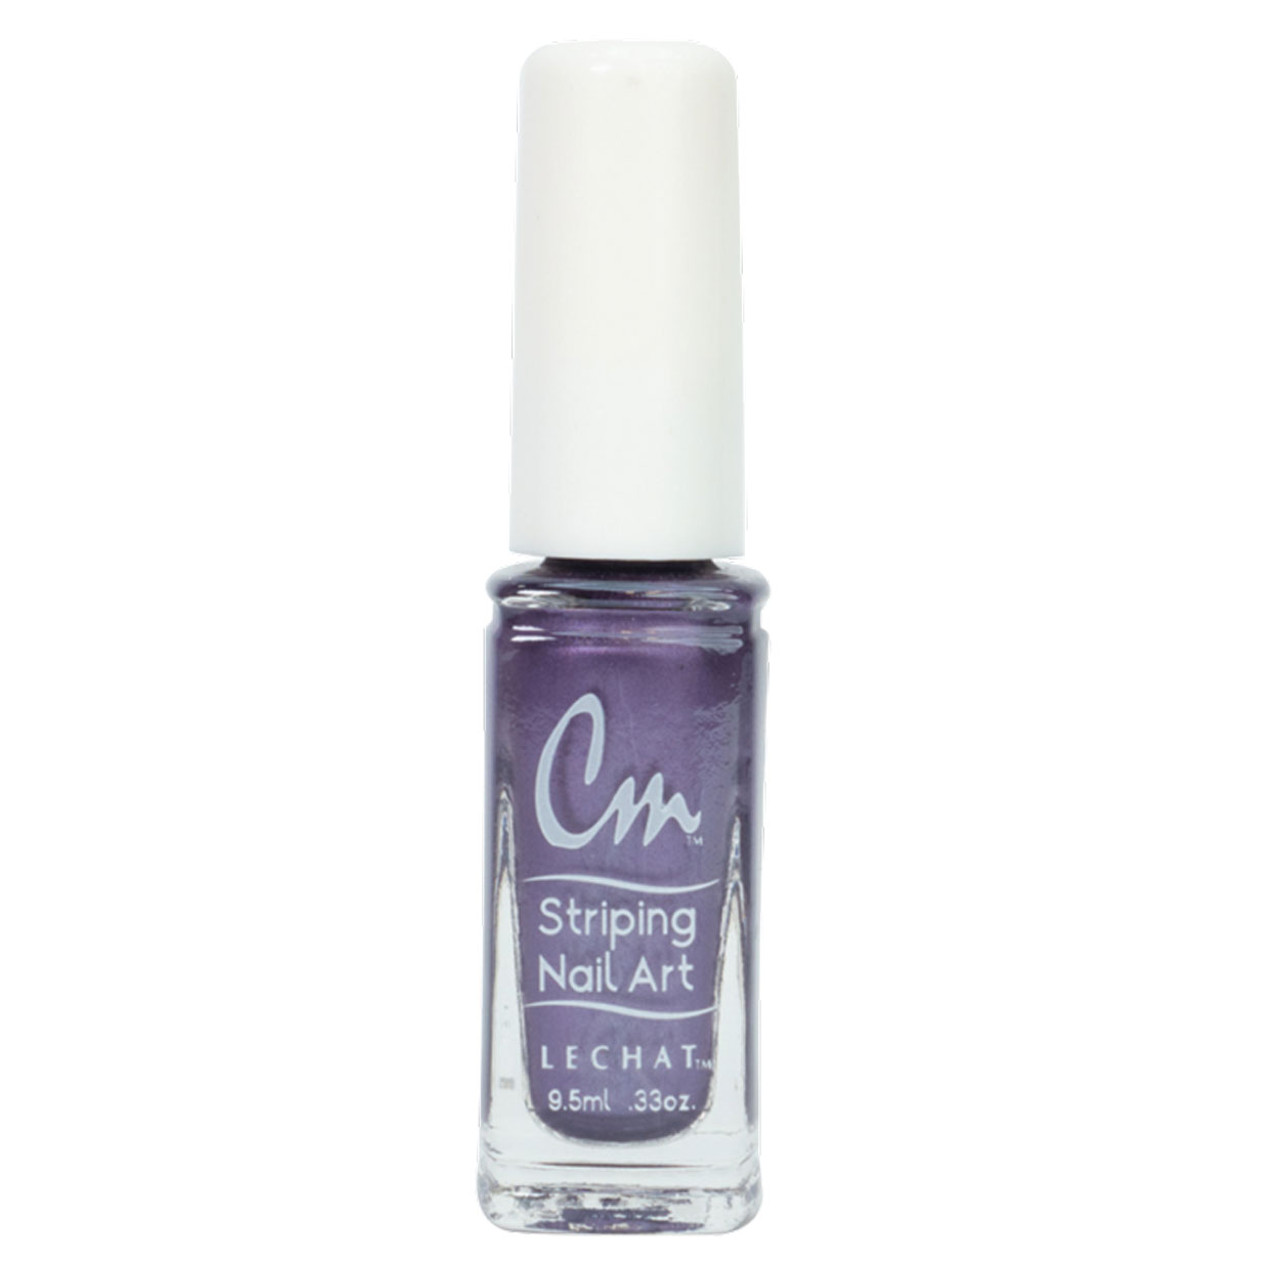 LeChat Cm Striping Nail Art - Royal Purple